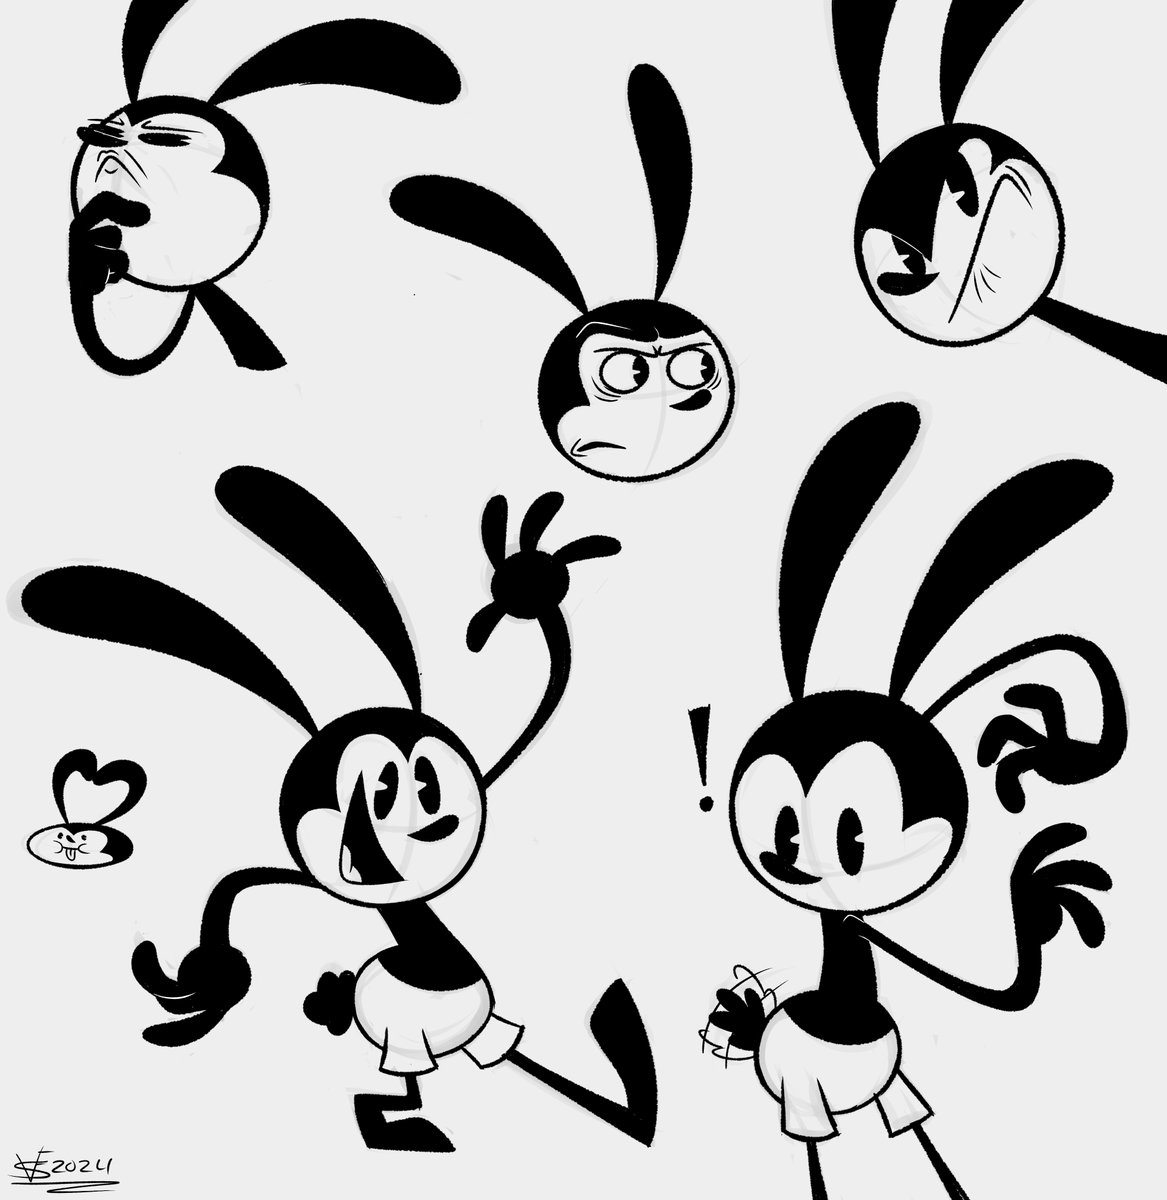 Oswald doodles 
#Oswaldtheluckyrabbit #EpicMickeyRebrushed #fanart #art